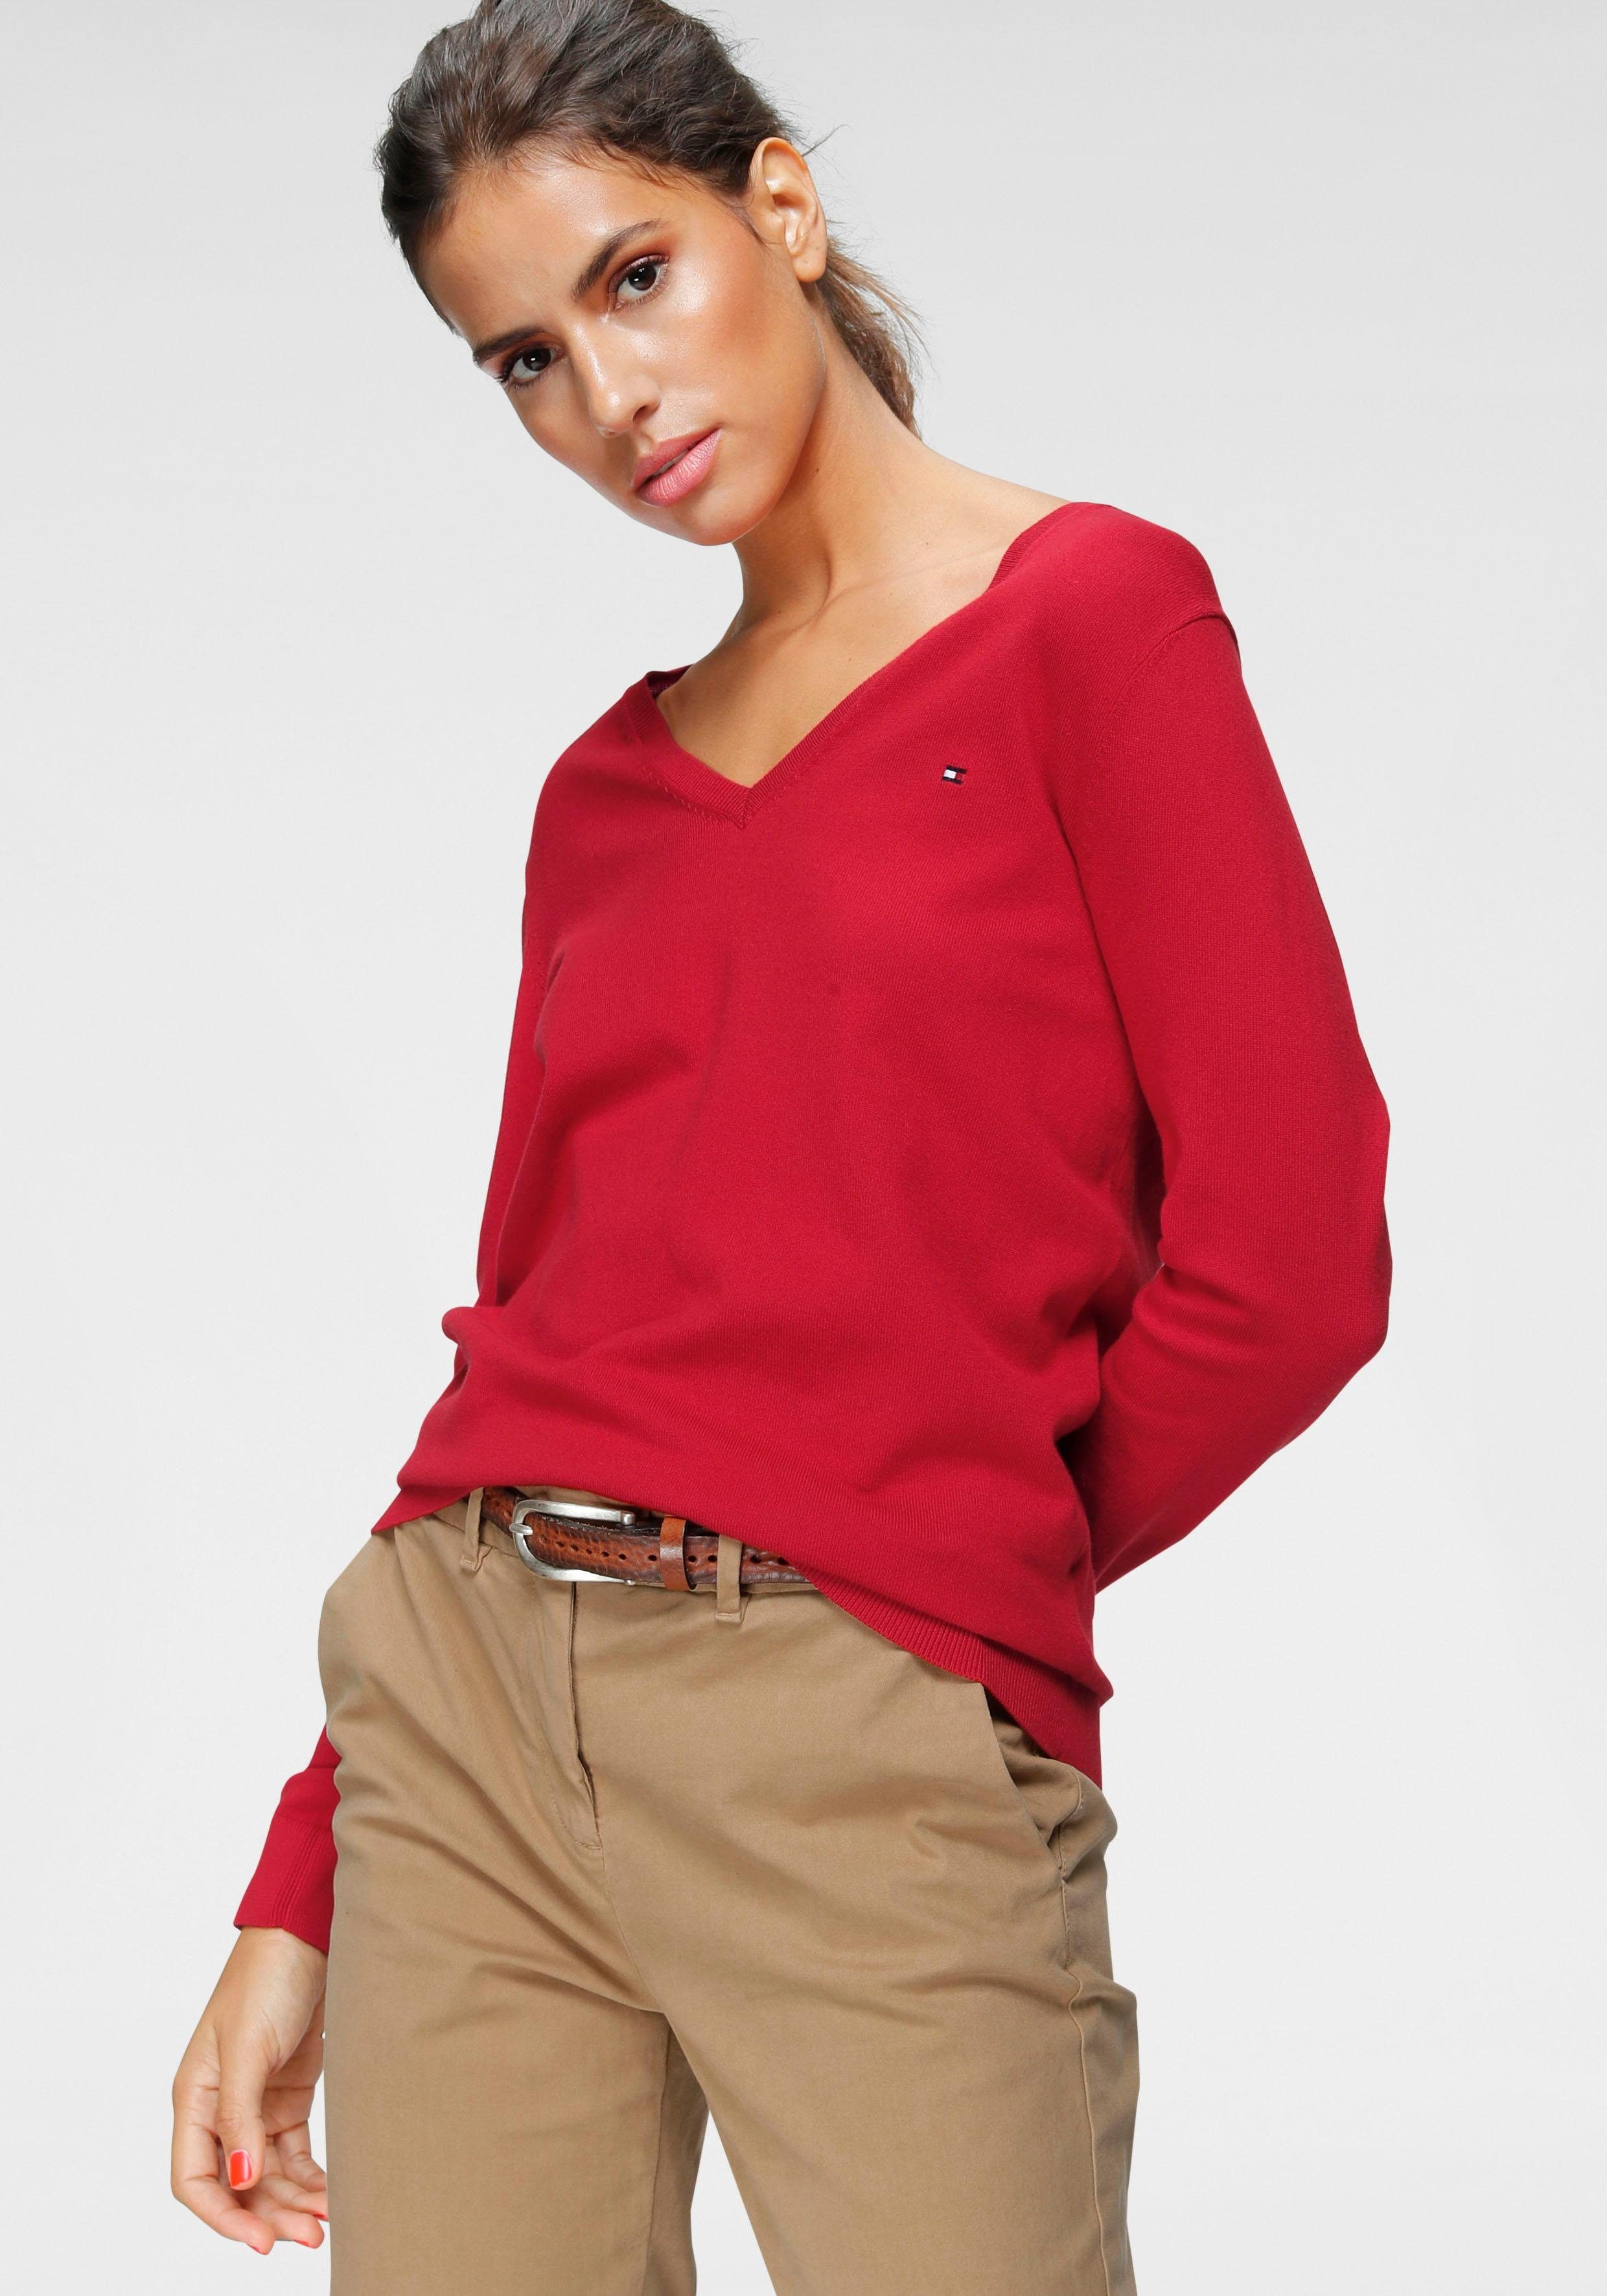 Pullover in rot online kaufen | OTTO